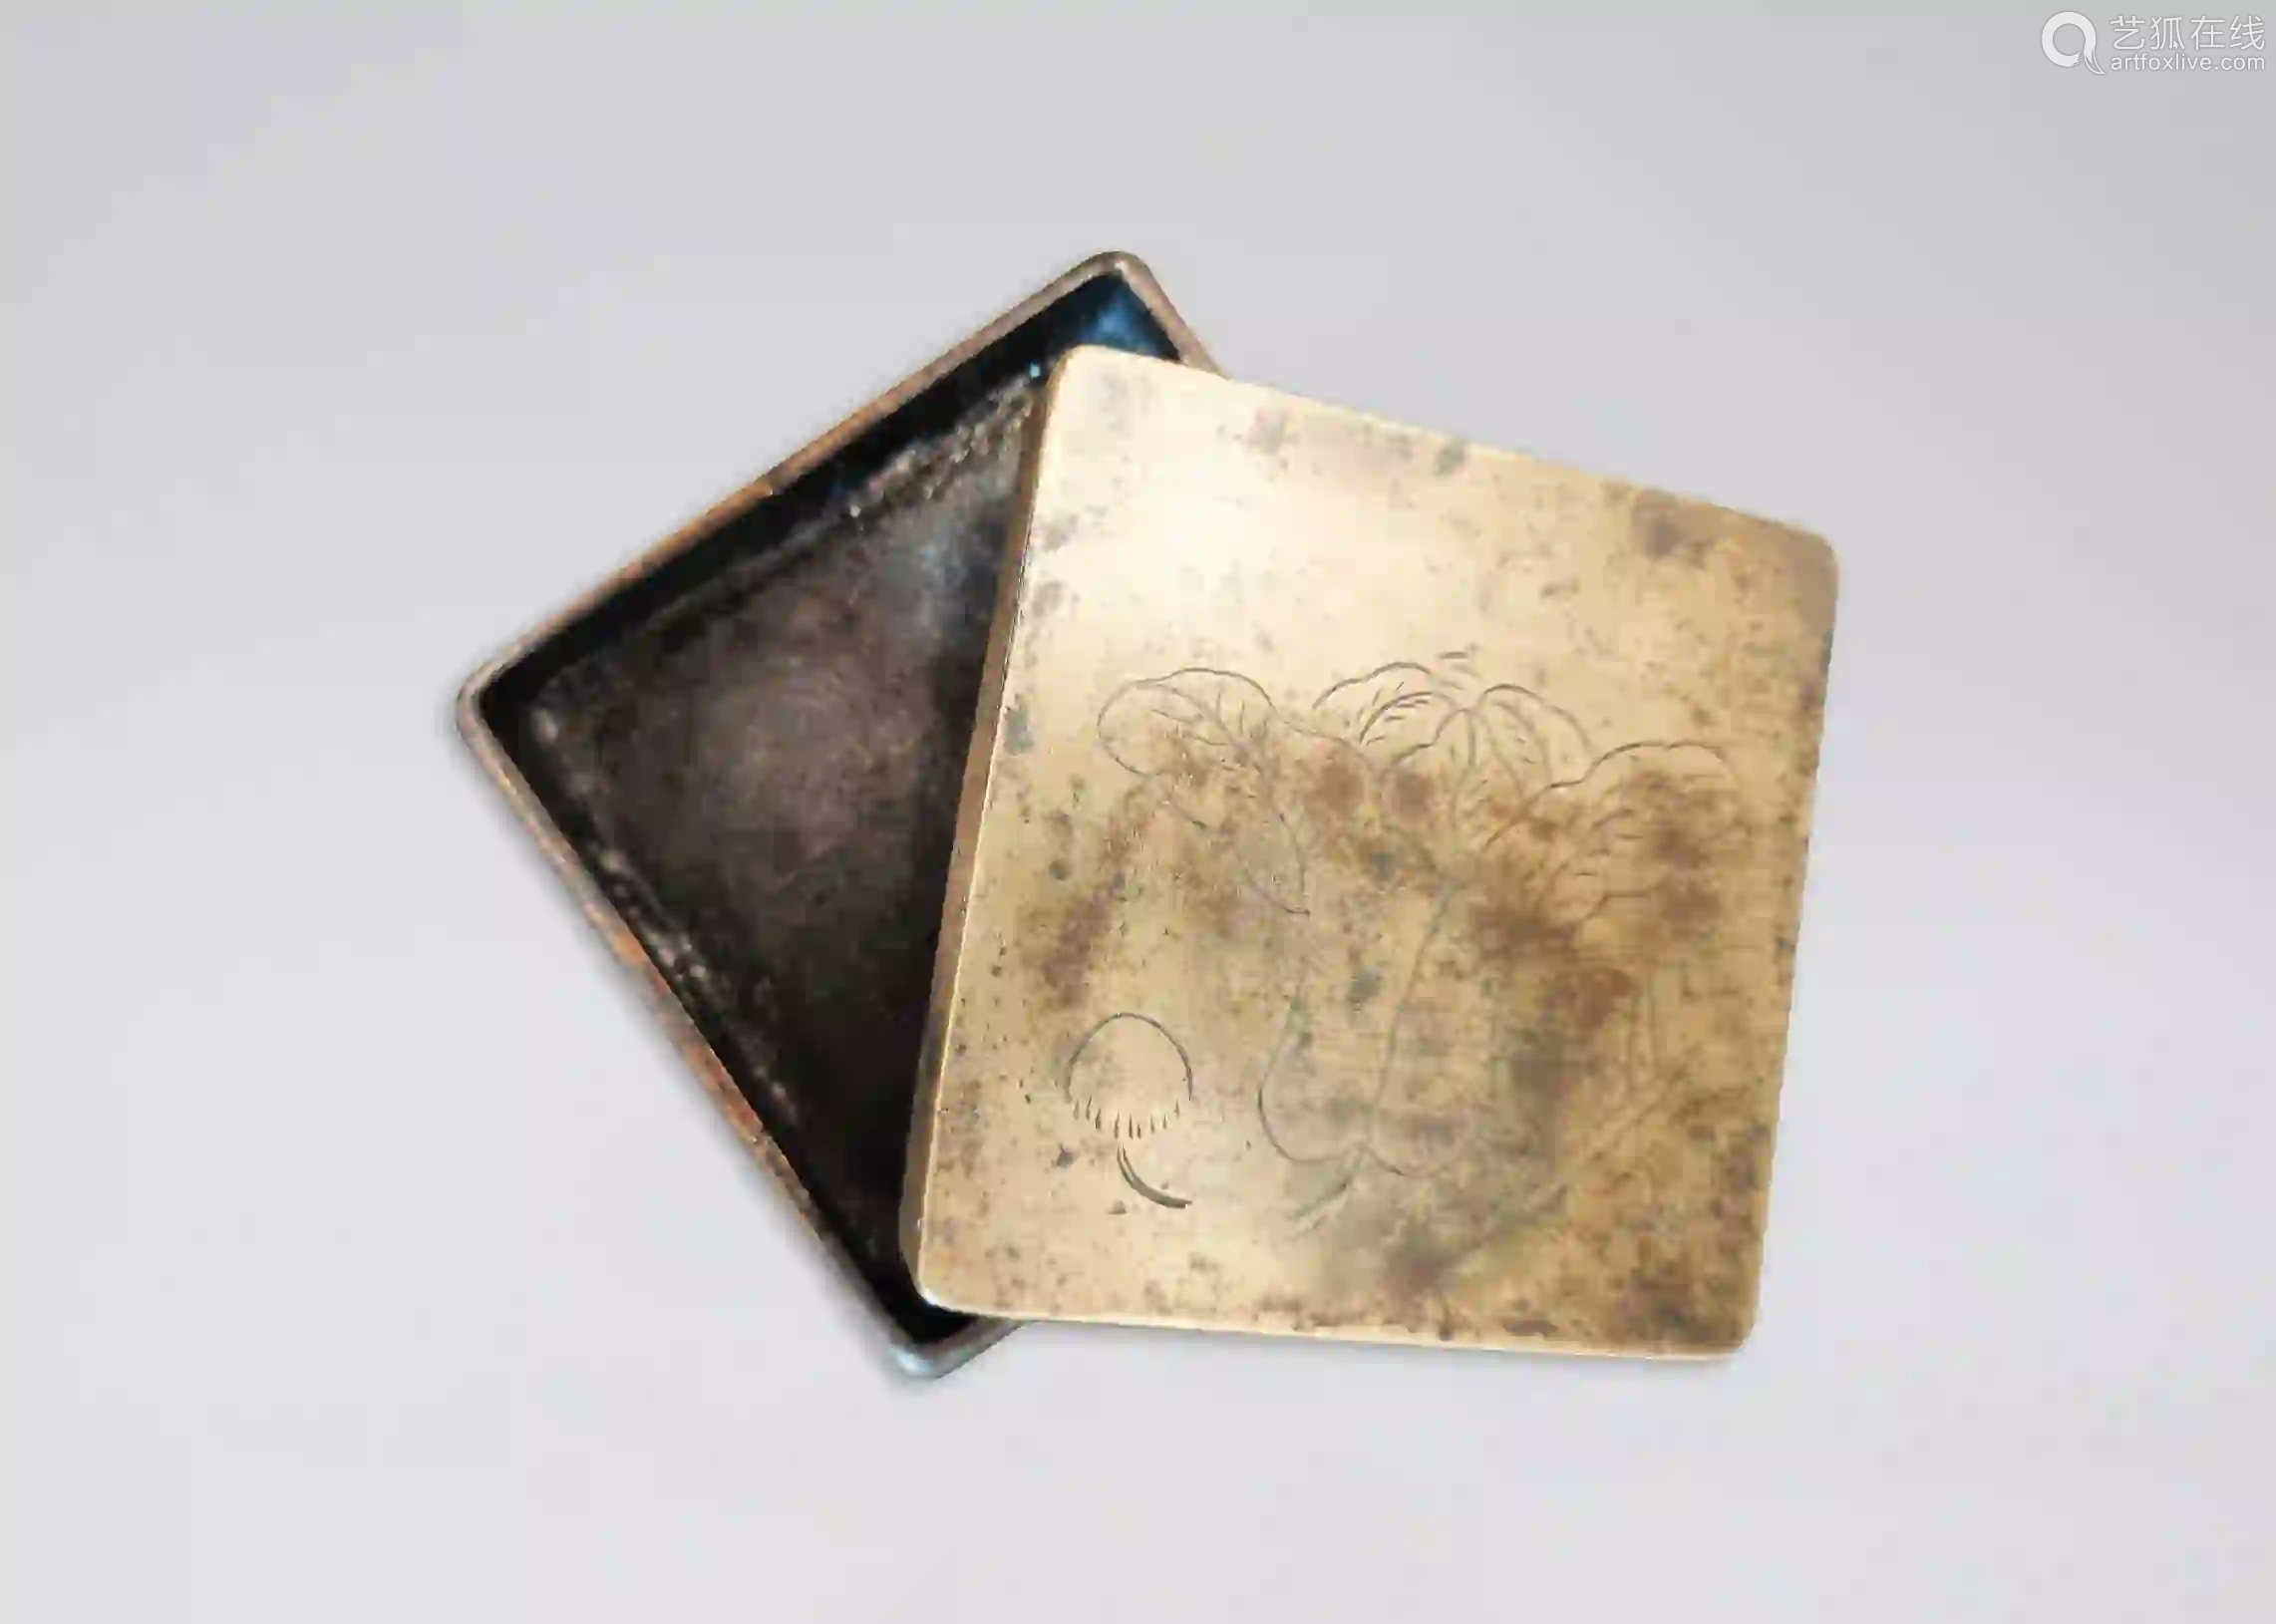 18th-19th century little copper box